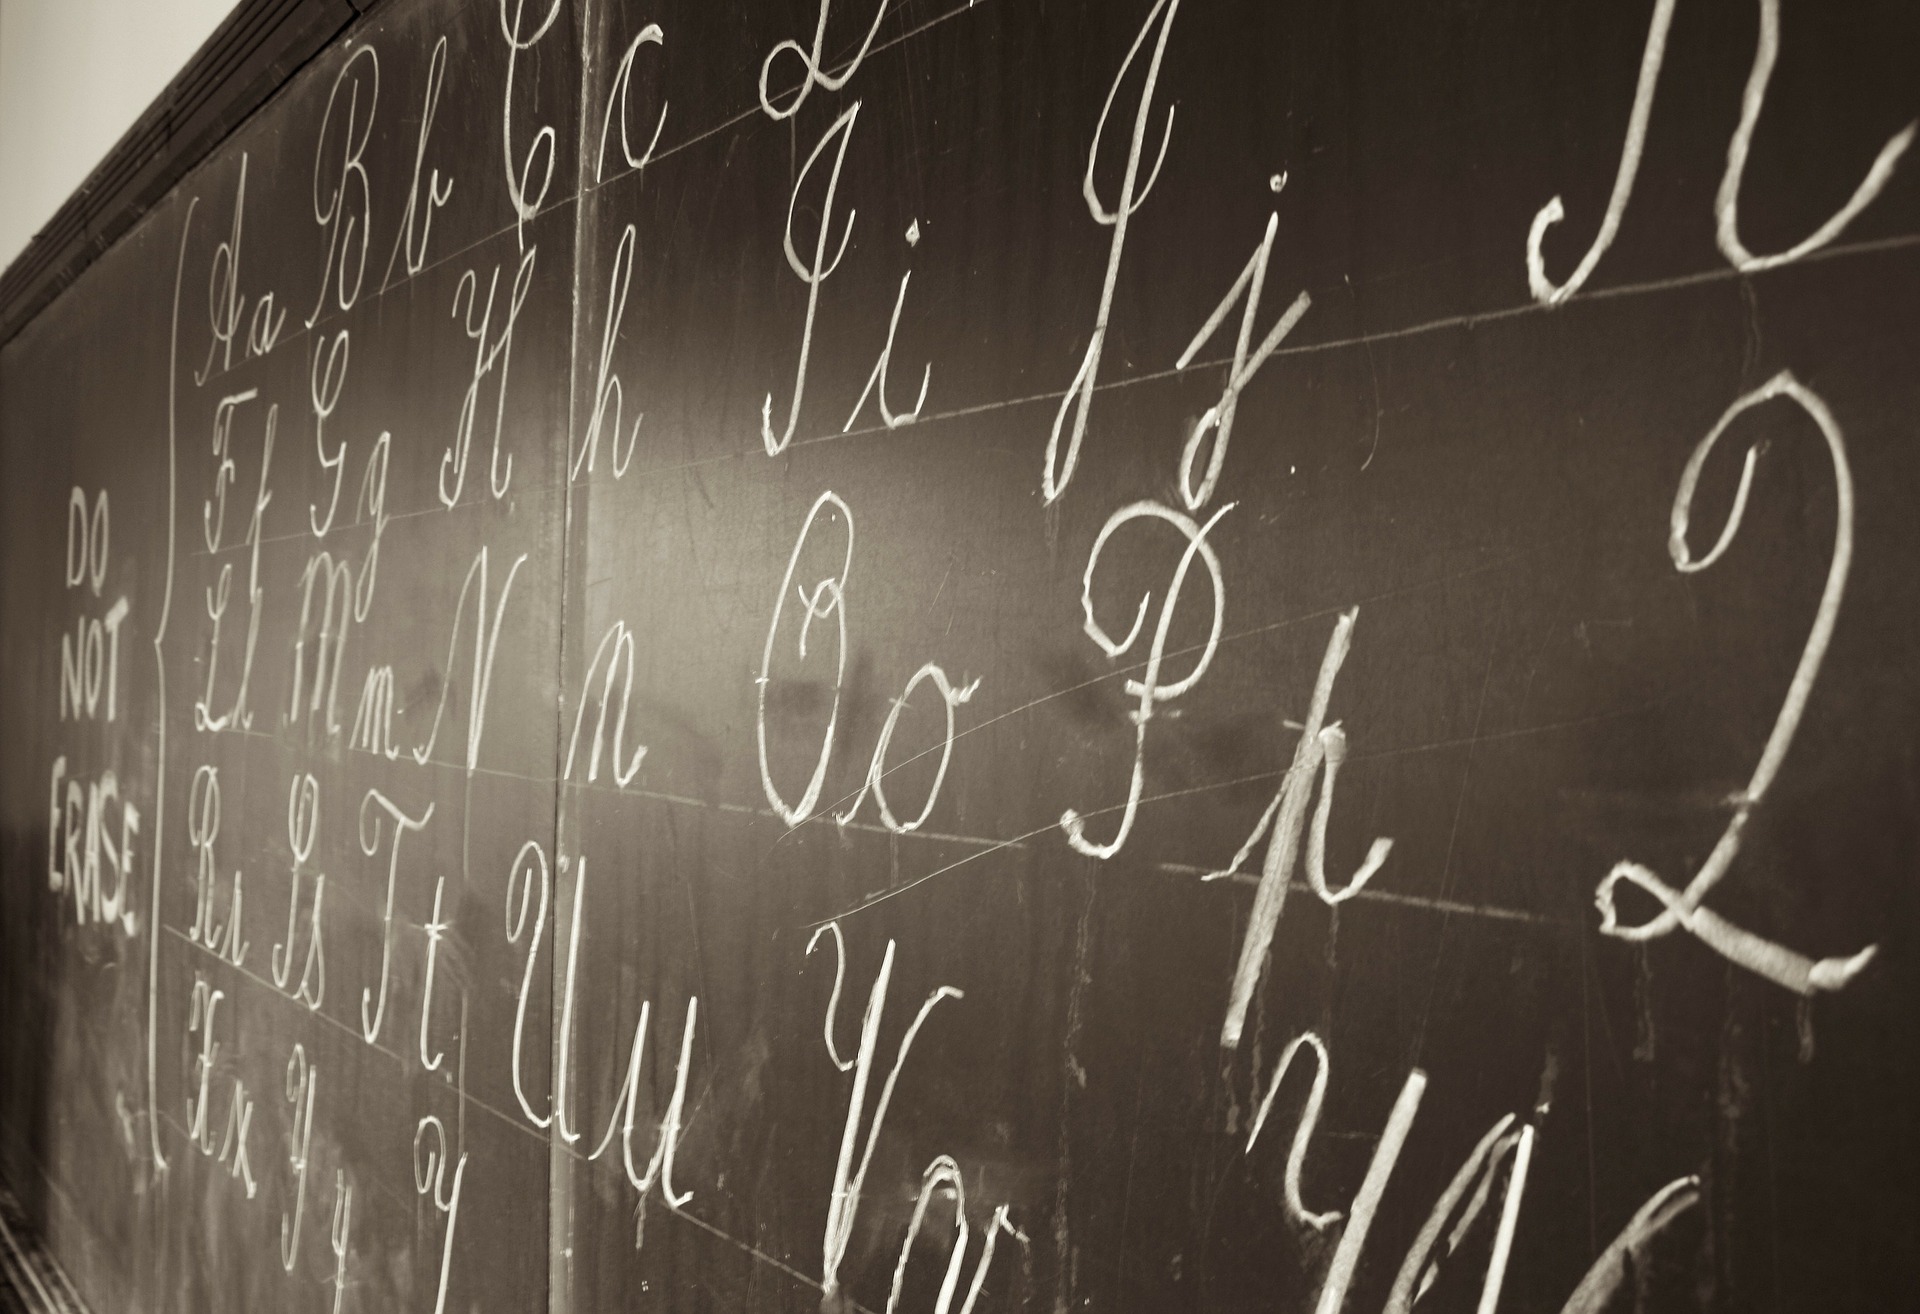 Blackboard with cursive writing in chalk.